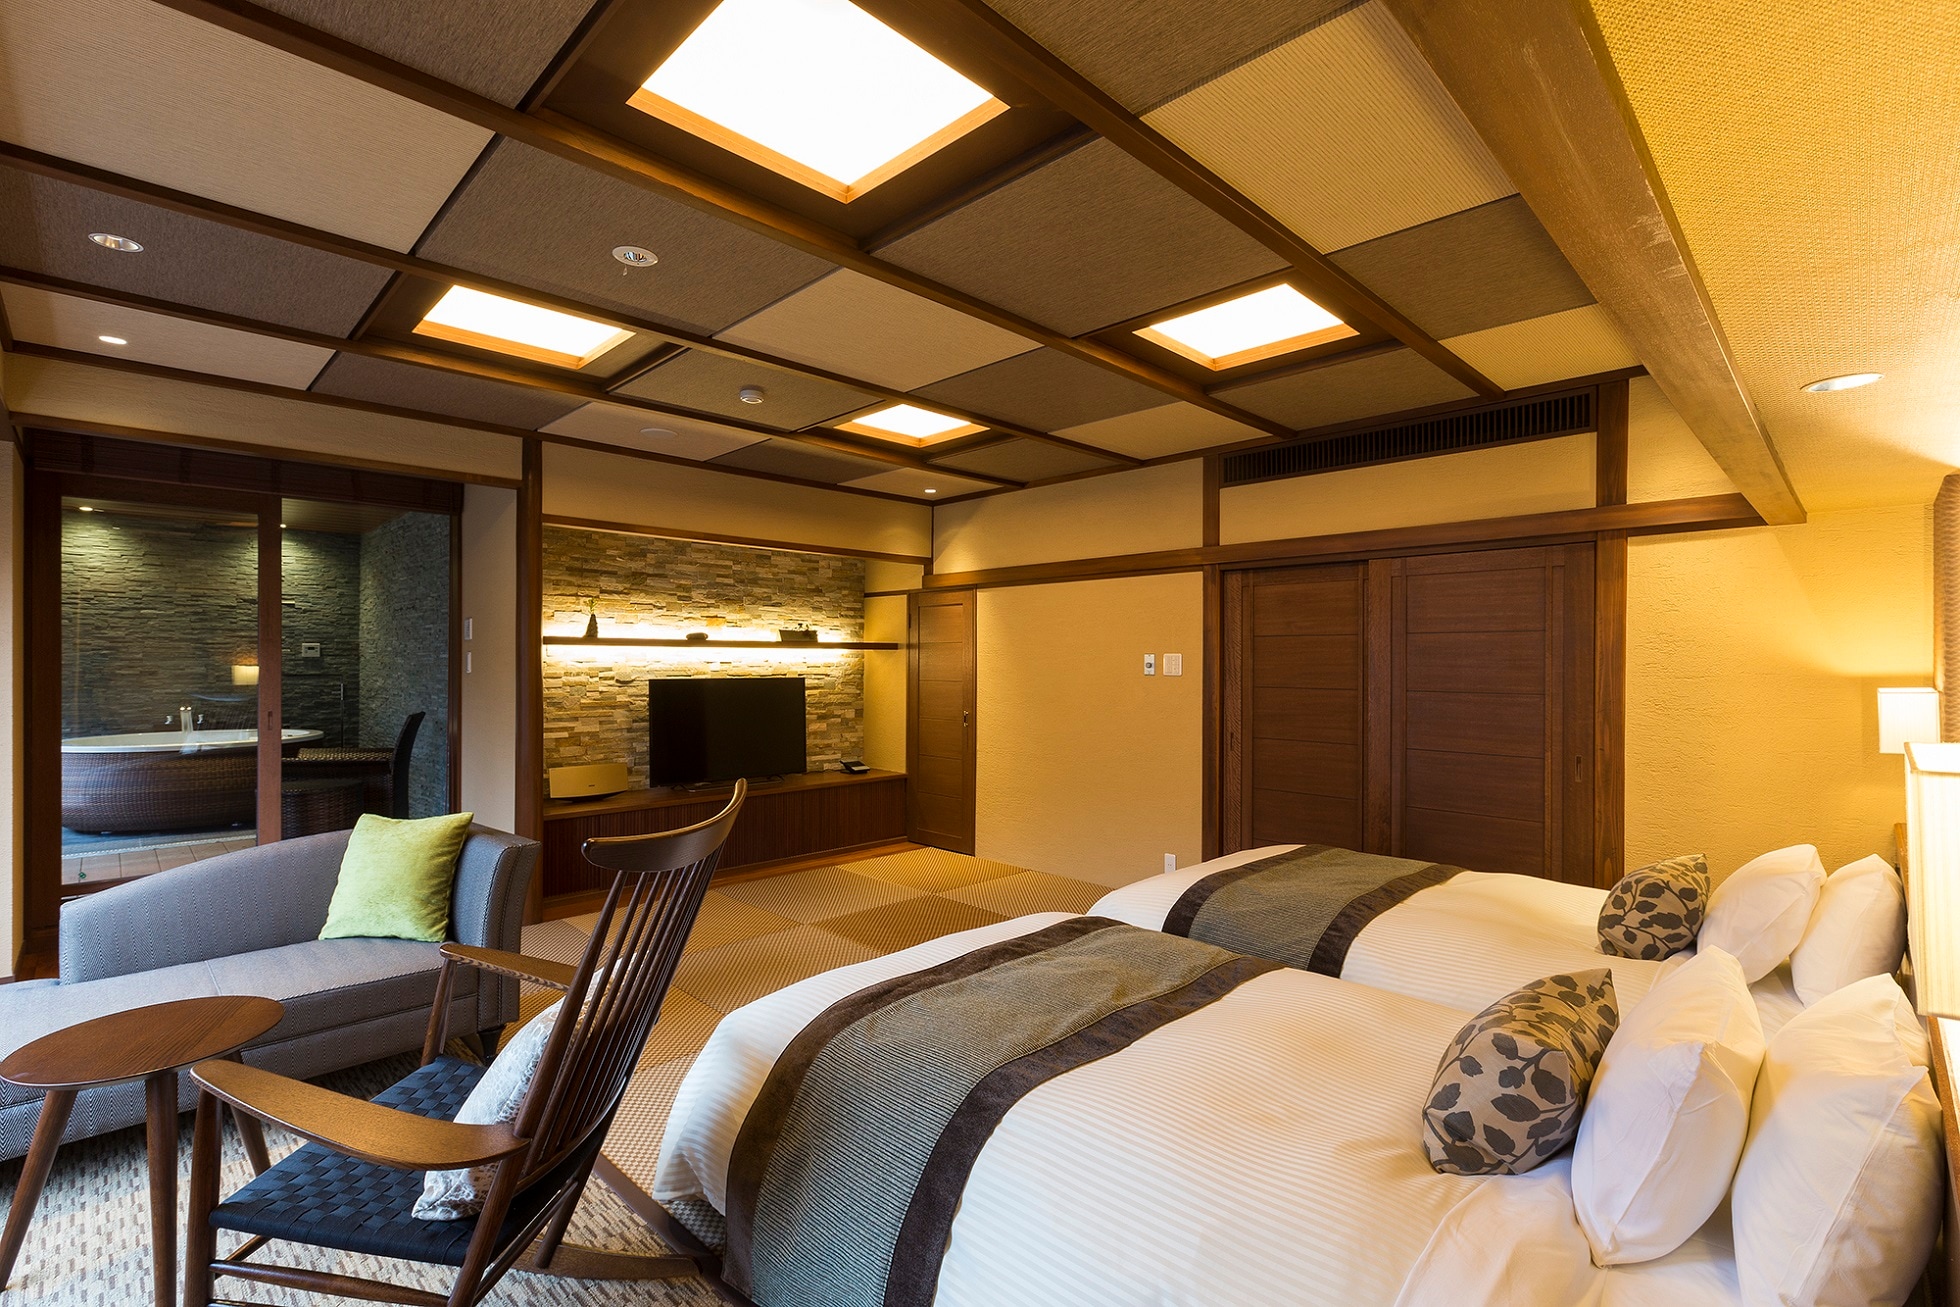 [อาคารหลัก: Japanese modern twin] ห้องพักพร้อมอ่างจากุซซี่ (ตัวอย่าง) มีเตียงคู่